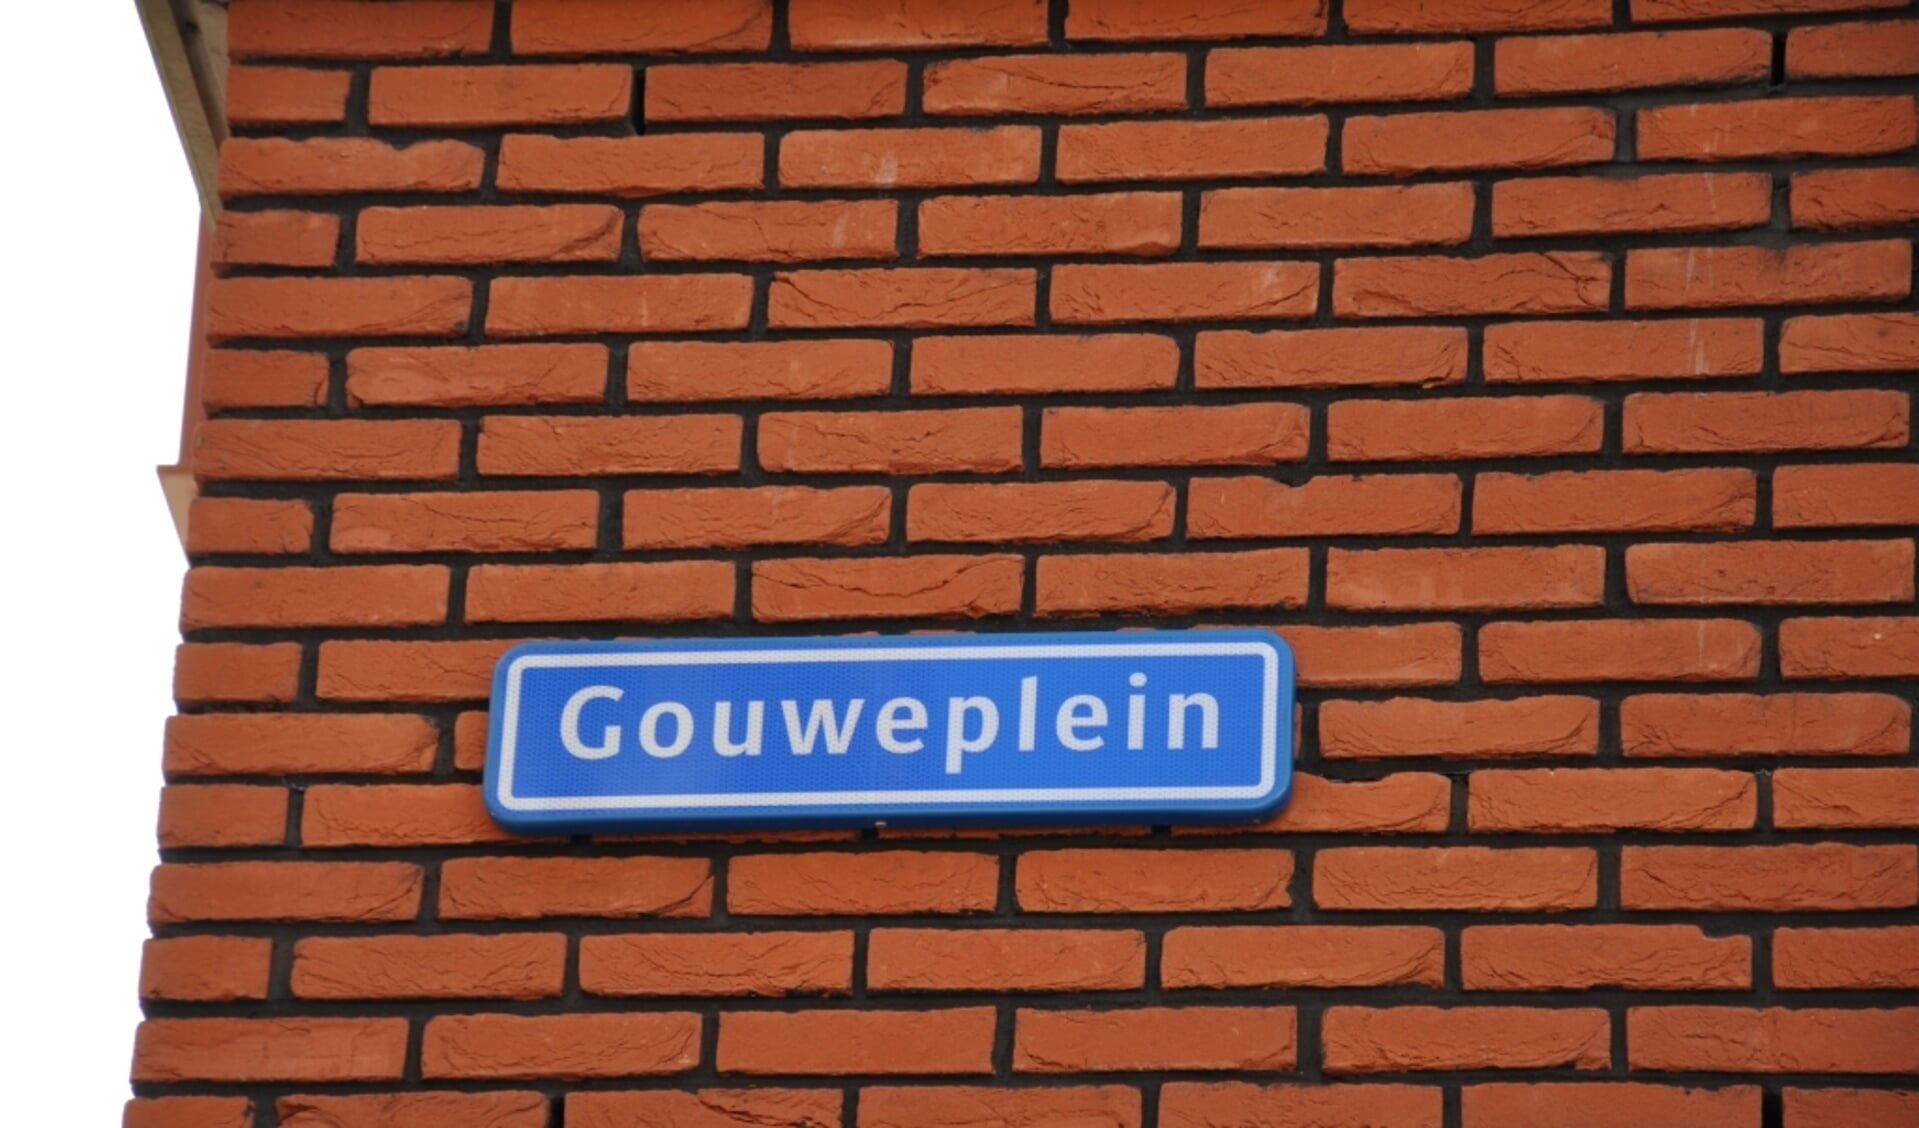 Uit een enquete bleek dat twee derde van de Waddinxveense ondervraagden aanbod mist in winkelcentrum Gouweplein.